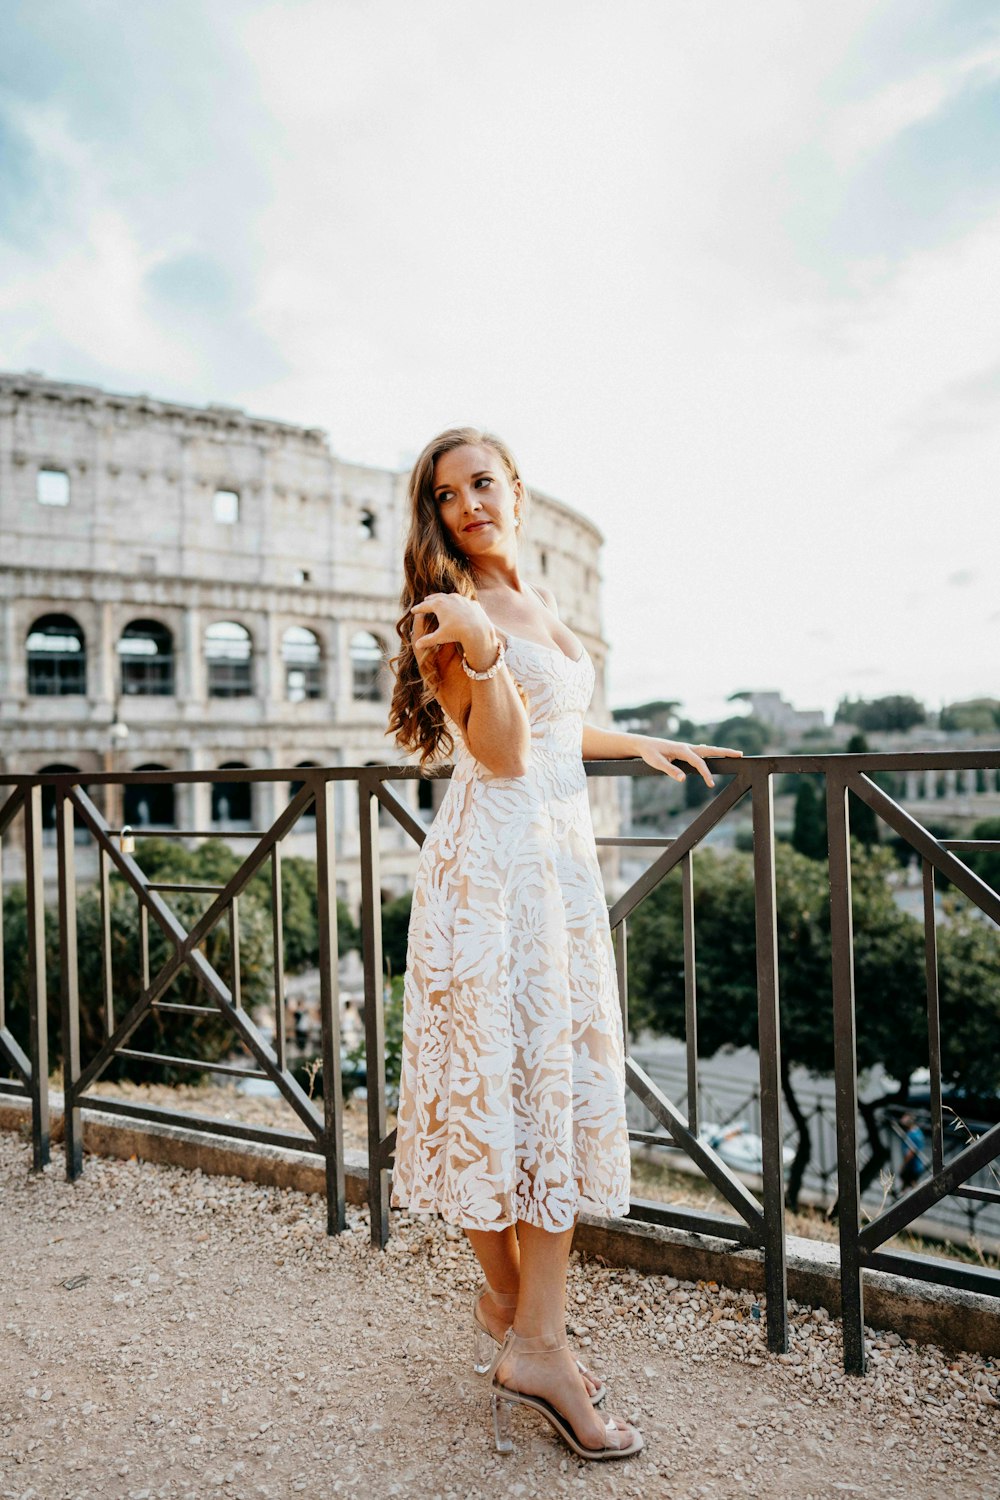 Une femme en robe blanche debout sur un balcon